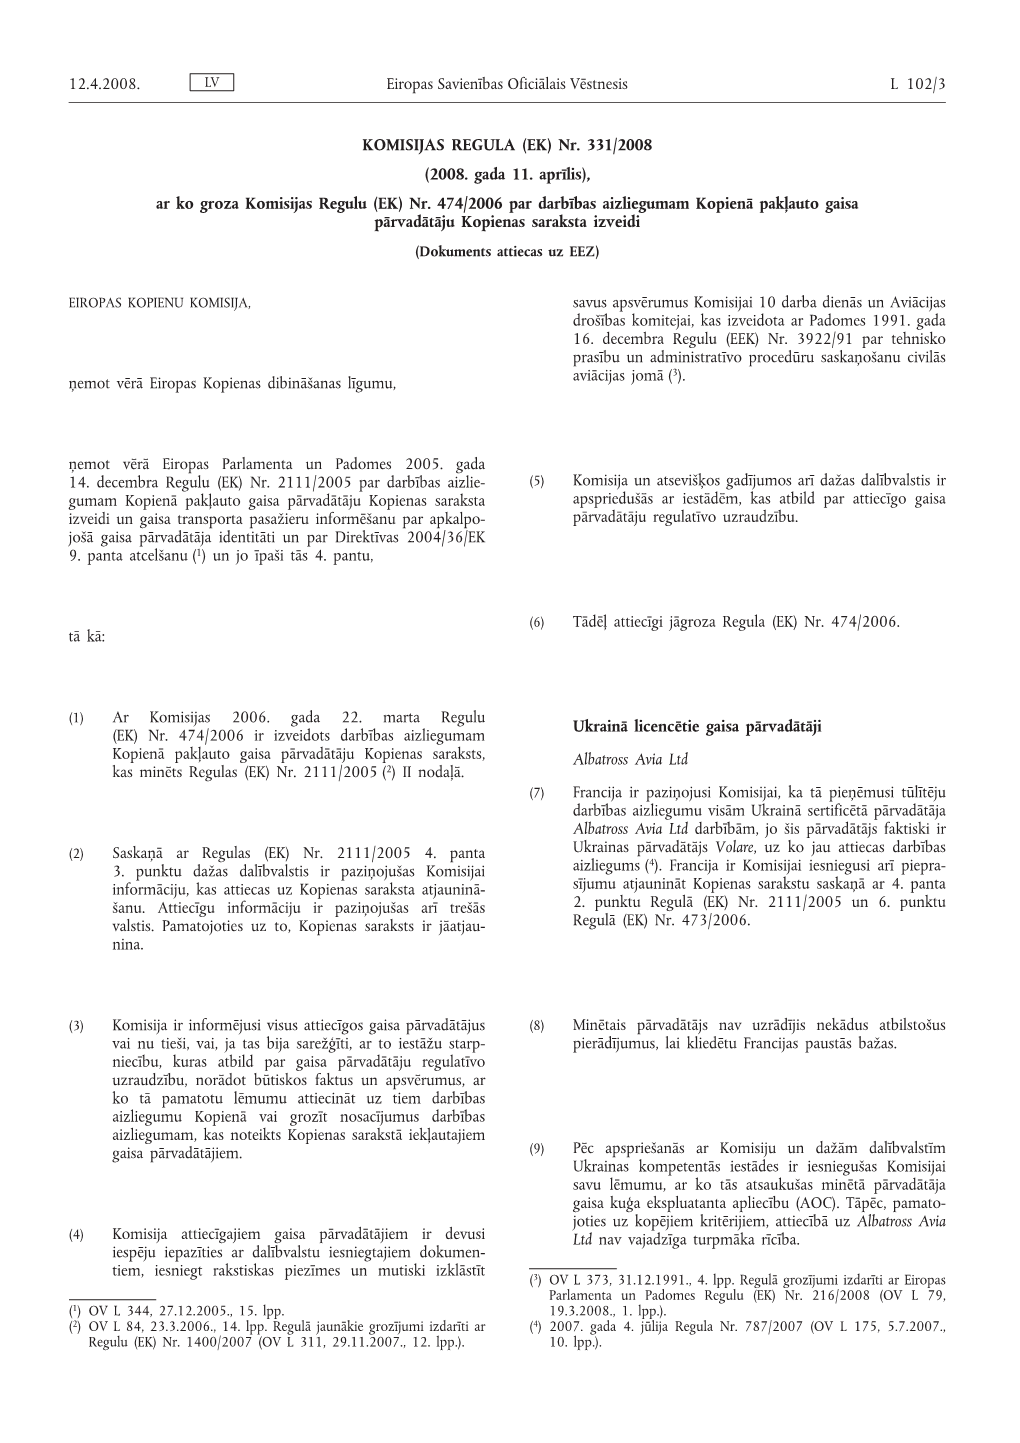 KOMISIJAS REGULA (EK) Nr. 331/2008 (2008